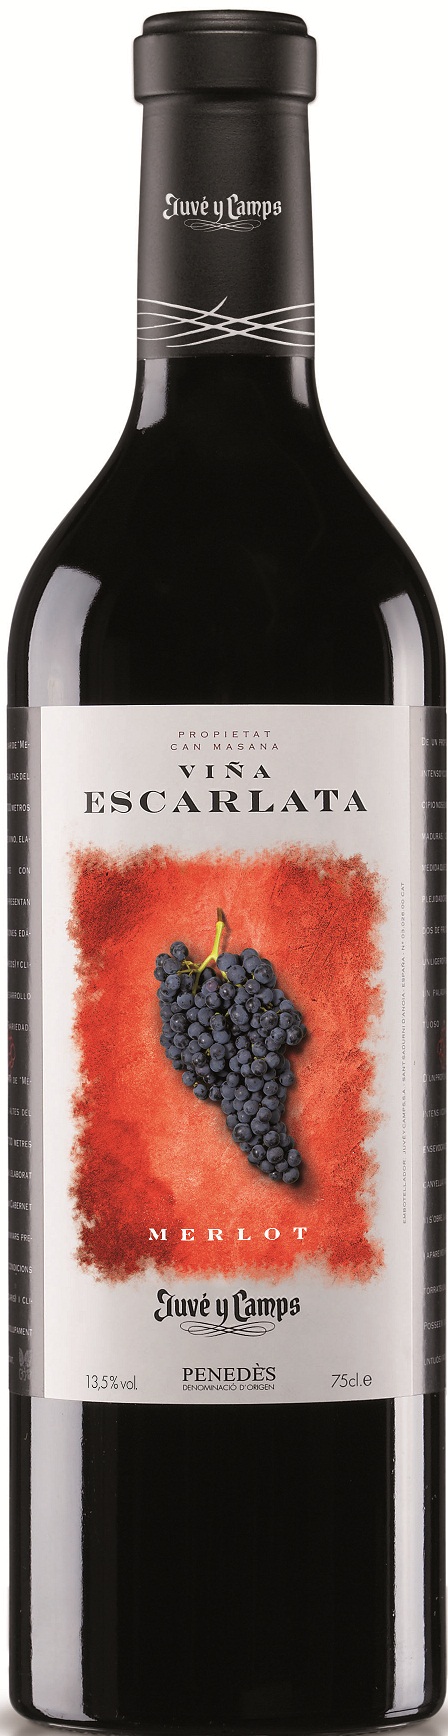 Bild von der Weinflasche Viña Escarlata